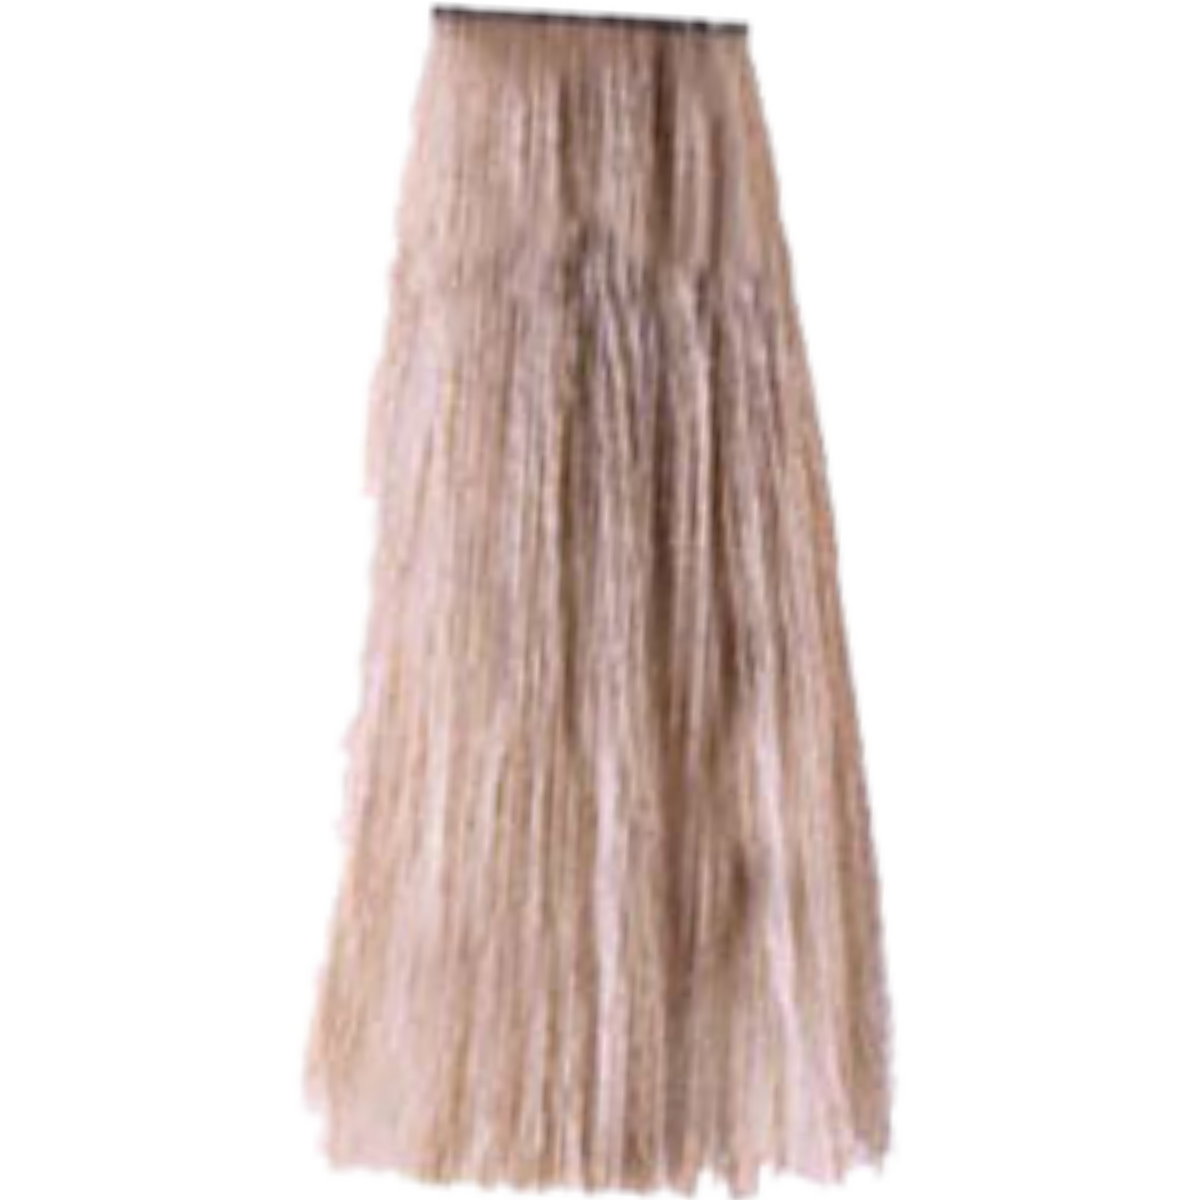 צבע שיער 9.02 VERY LIGHT PEARL BLONDE פארמויטה FarmaVita צבע לשיער 100 גרם